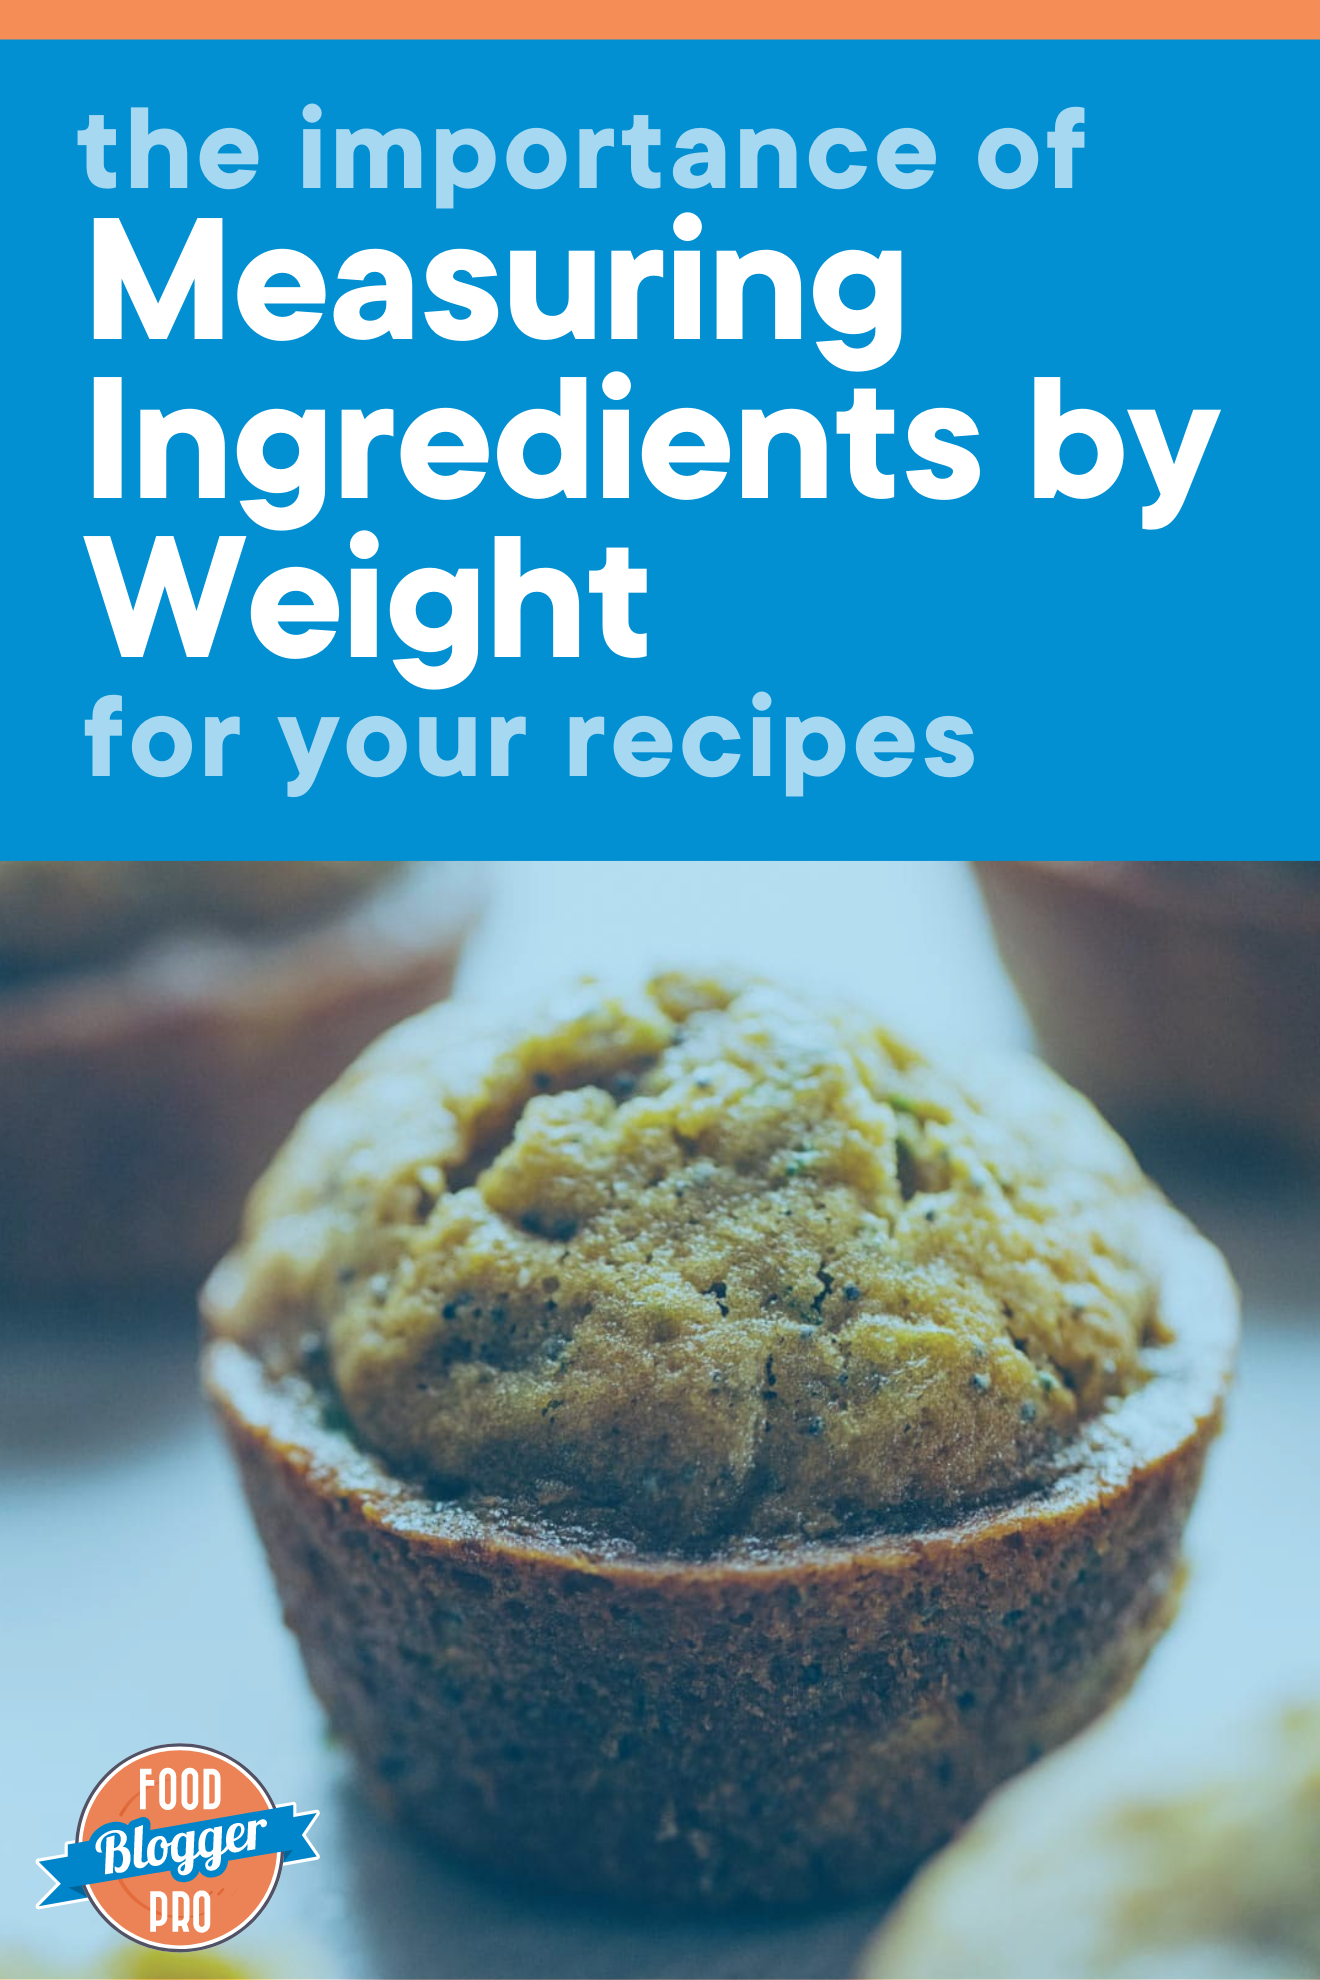 松饼图蓝叠文本读作“用权测量成份对食谱的重要性”。